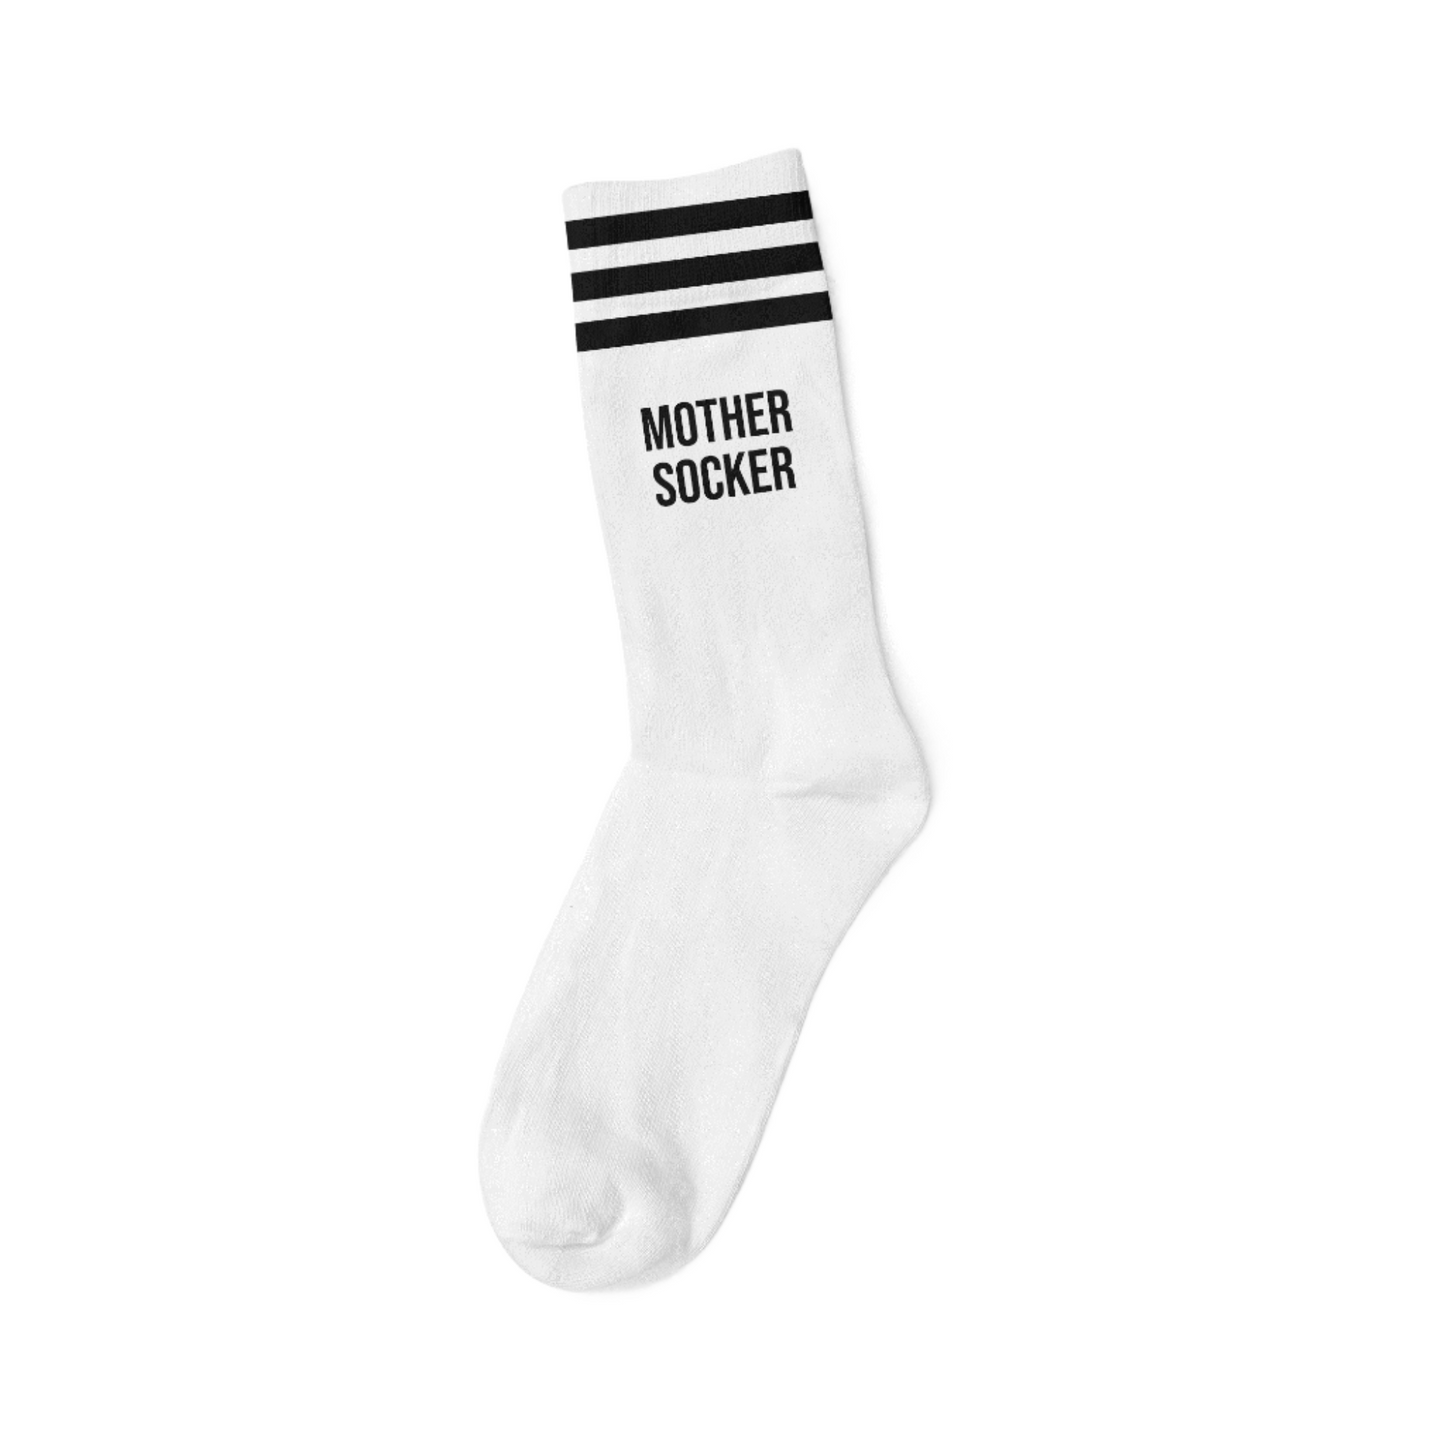 Socks Mother Socker White - Mothersocker